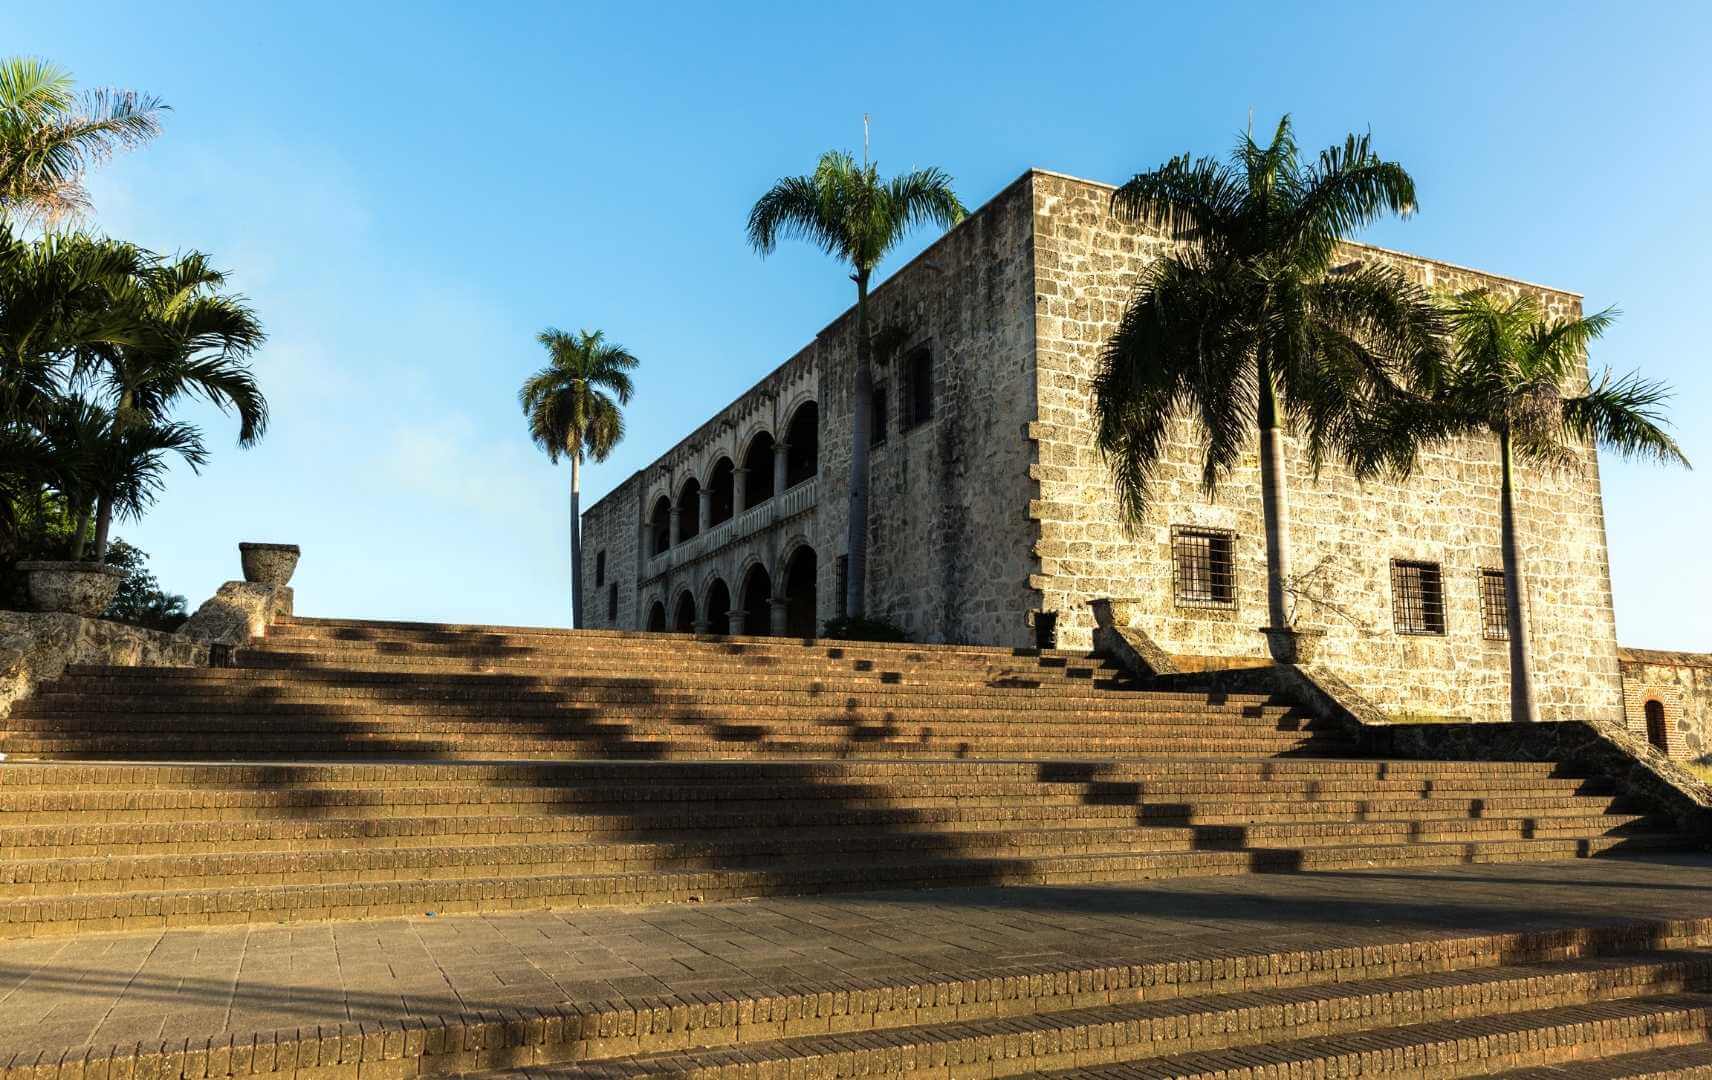 Koloniale Altstadt in Santo Domingo